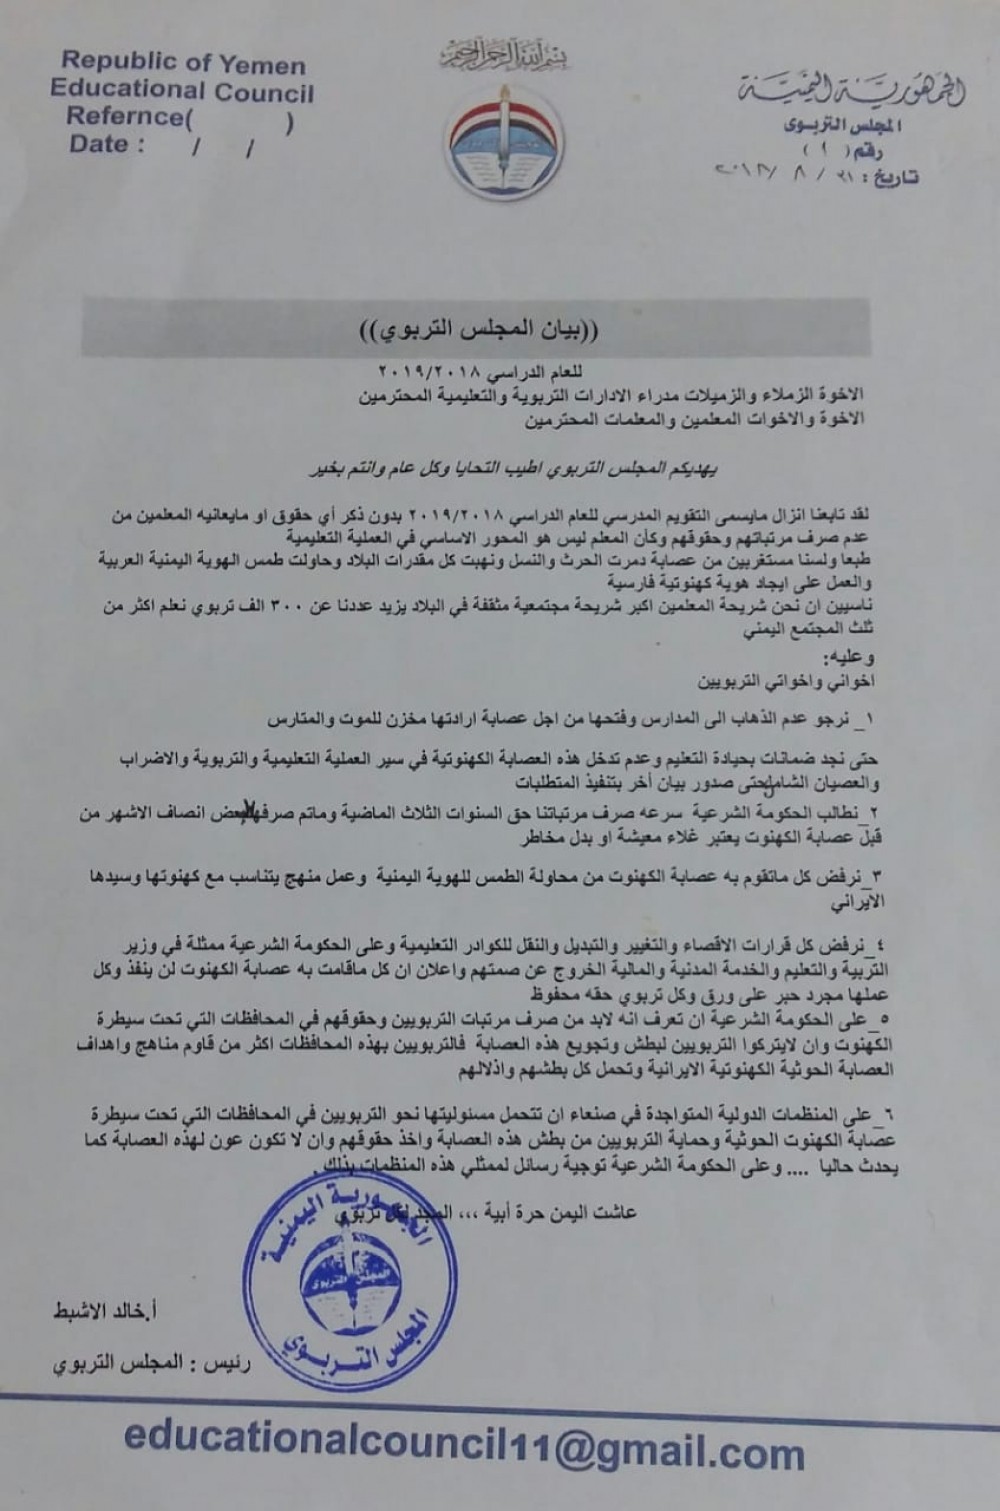 المجلس التربوي يصدر بيانا بخصوص العملية التعليمة في اليمن (وثيقة)